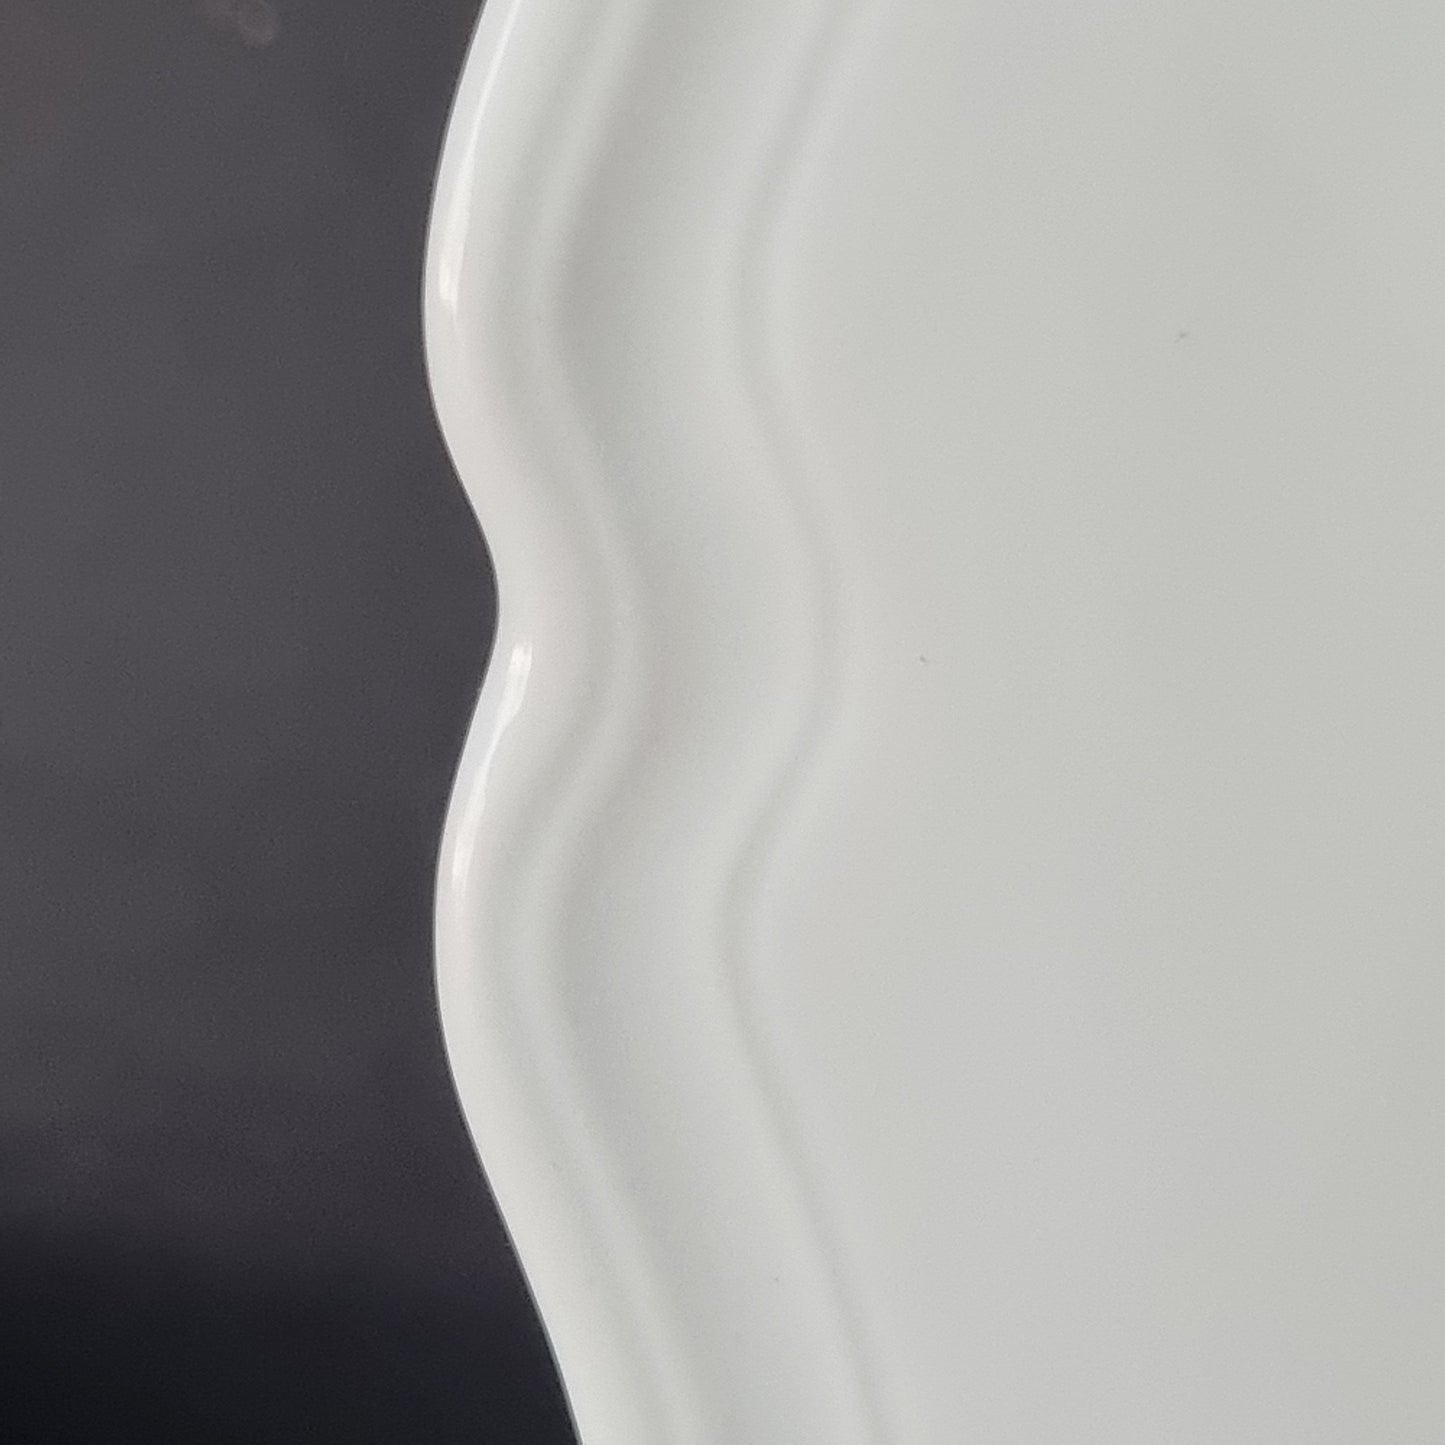 La vajilla blanca de porcelana de Limoges